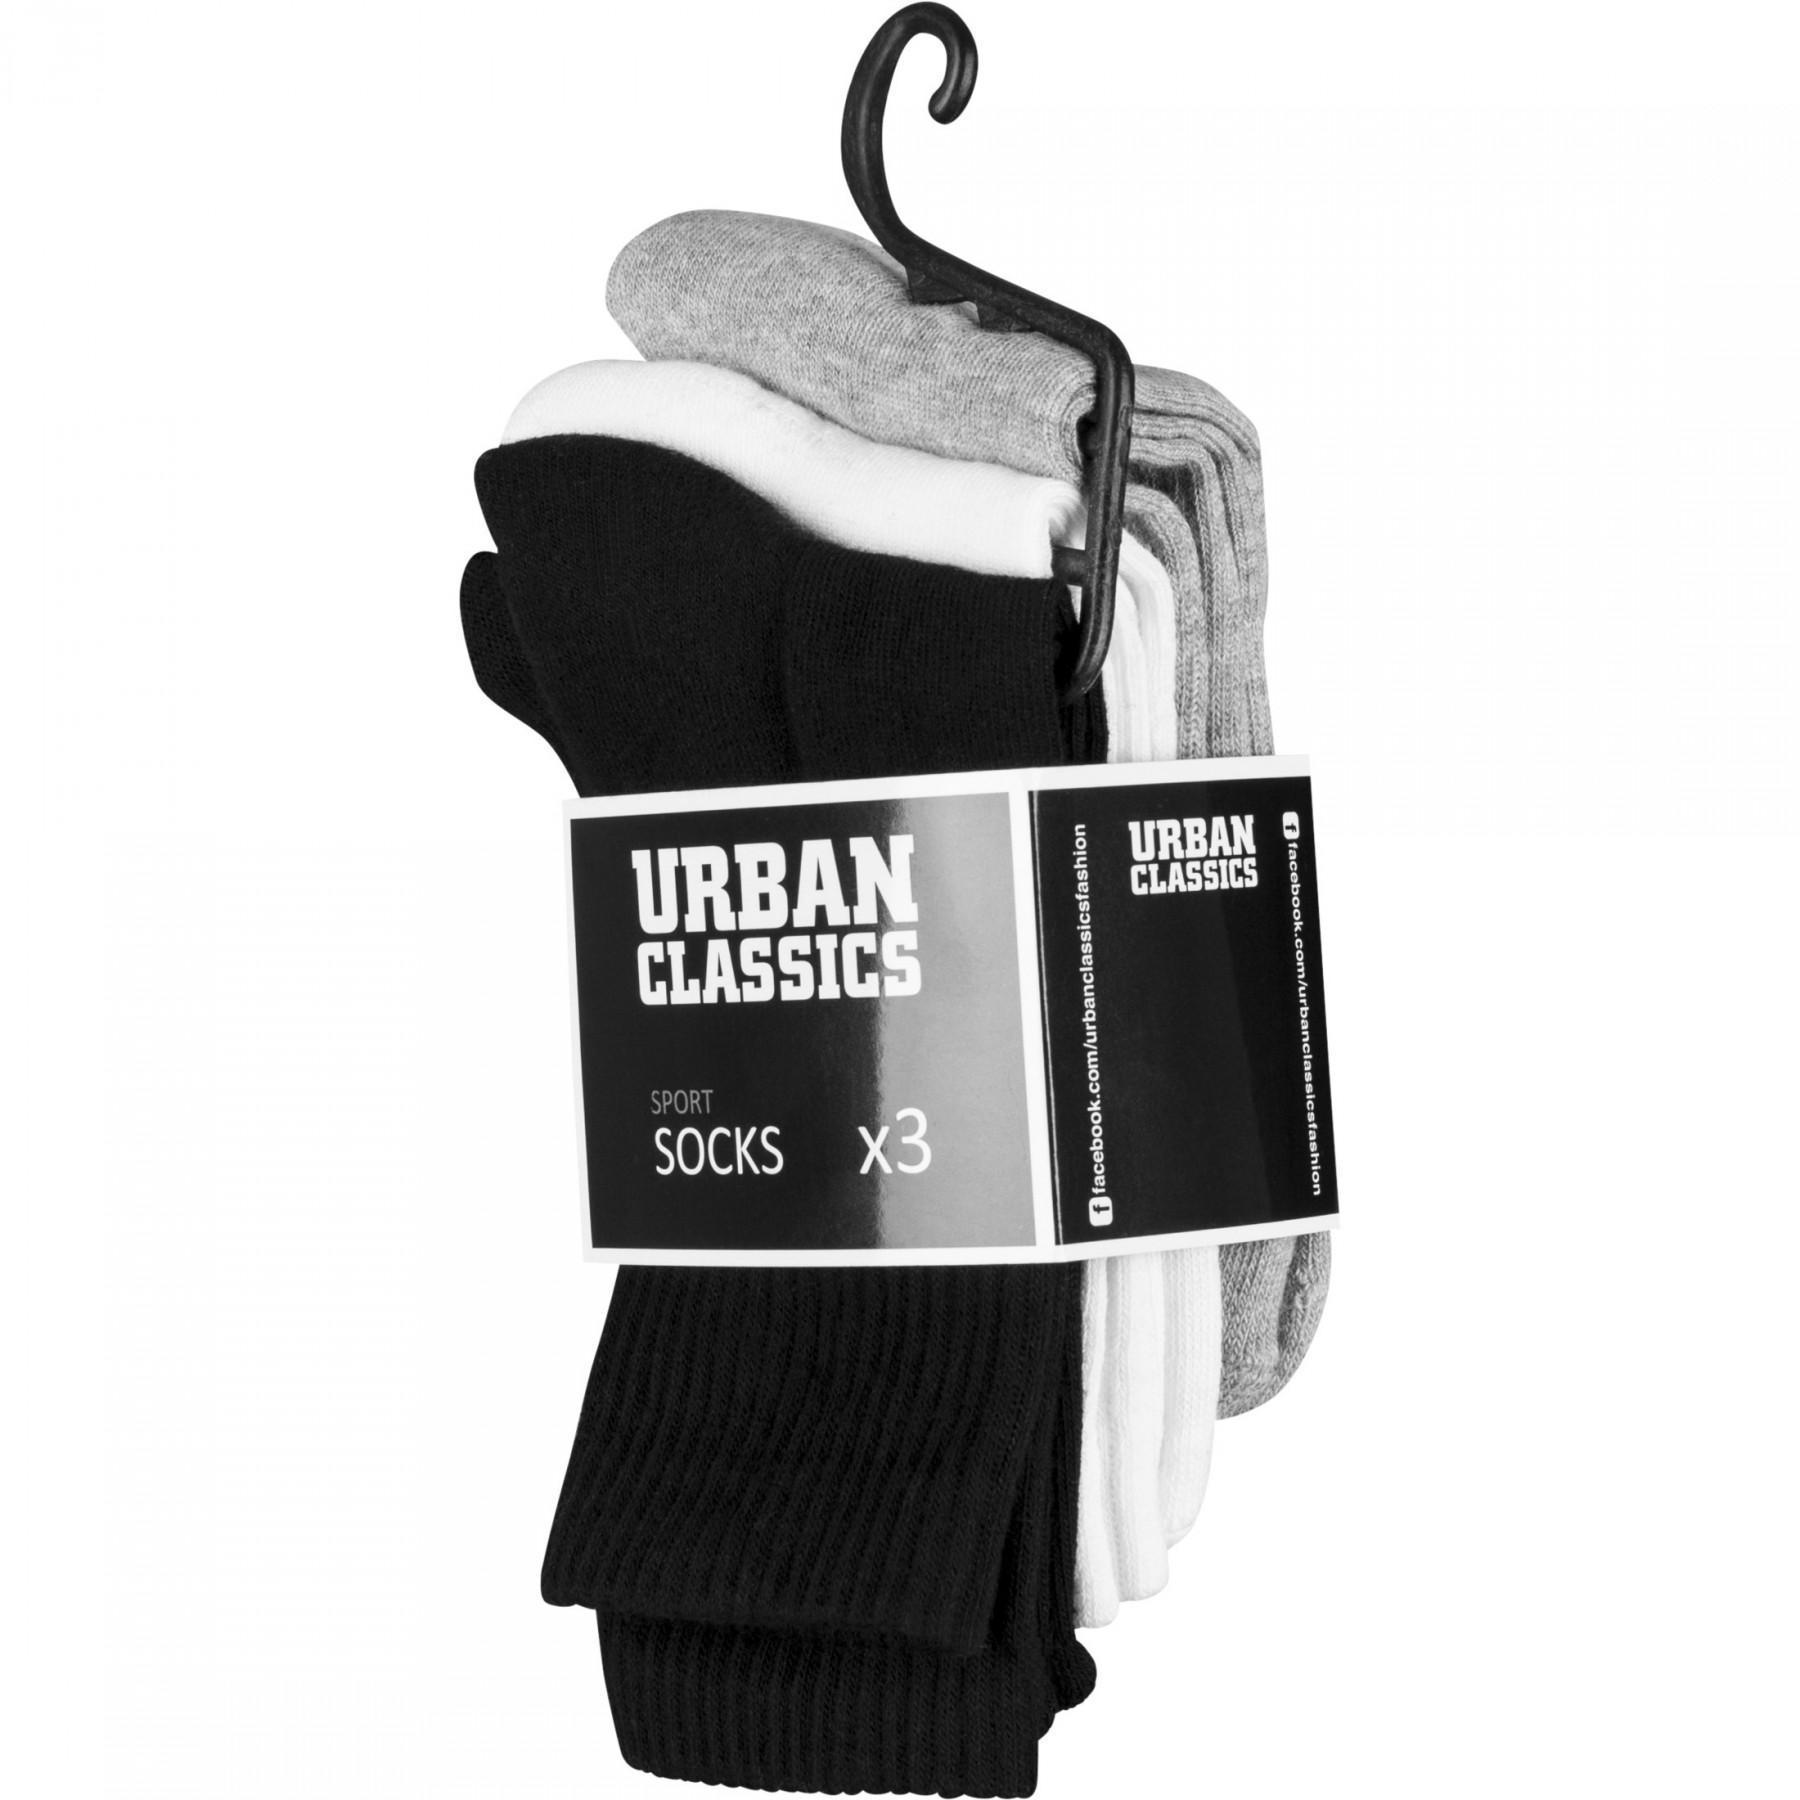 Socken urban classic sport (x3) 